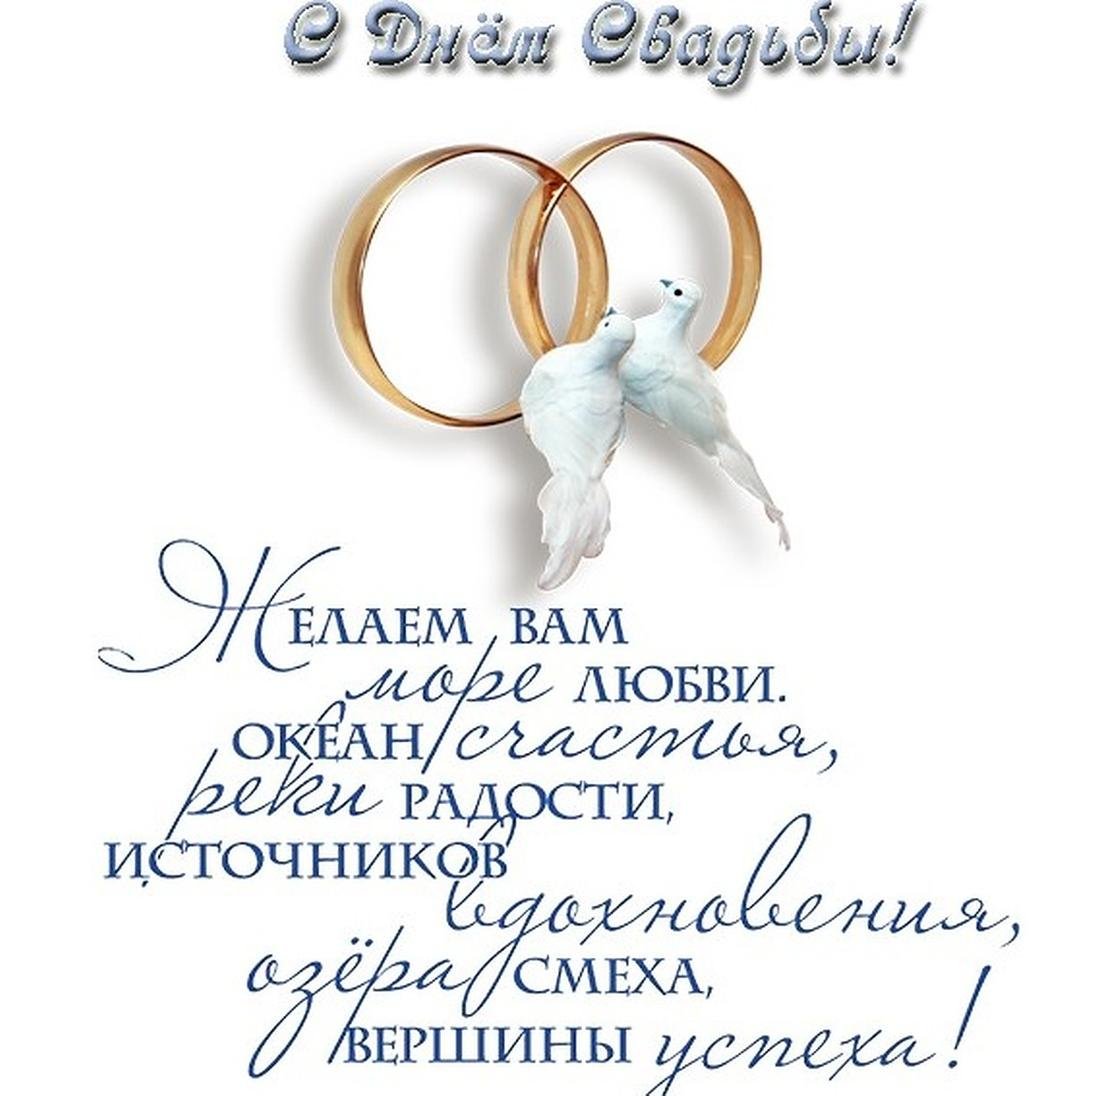 Поздравления и пожелания на свадьбу в стихах и в прозе